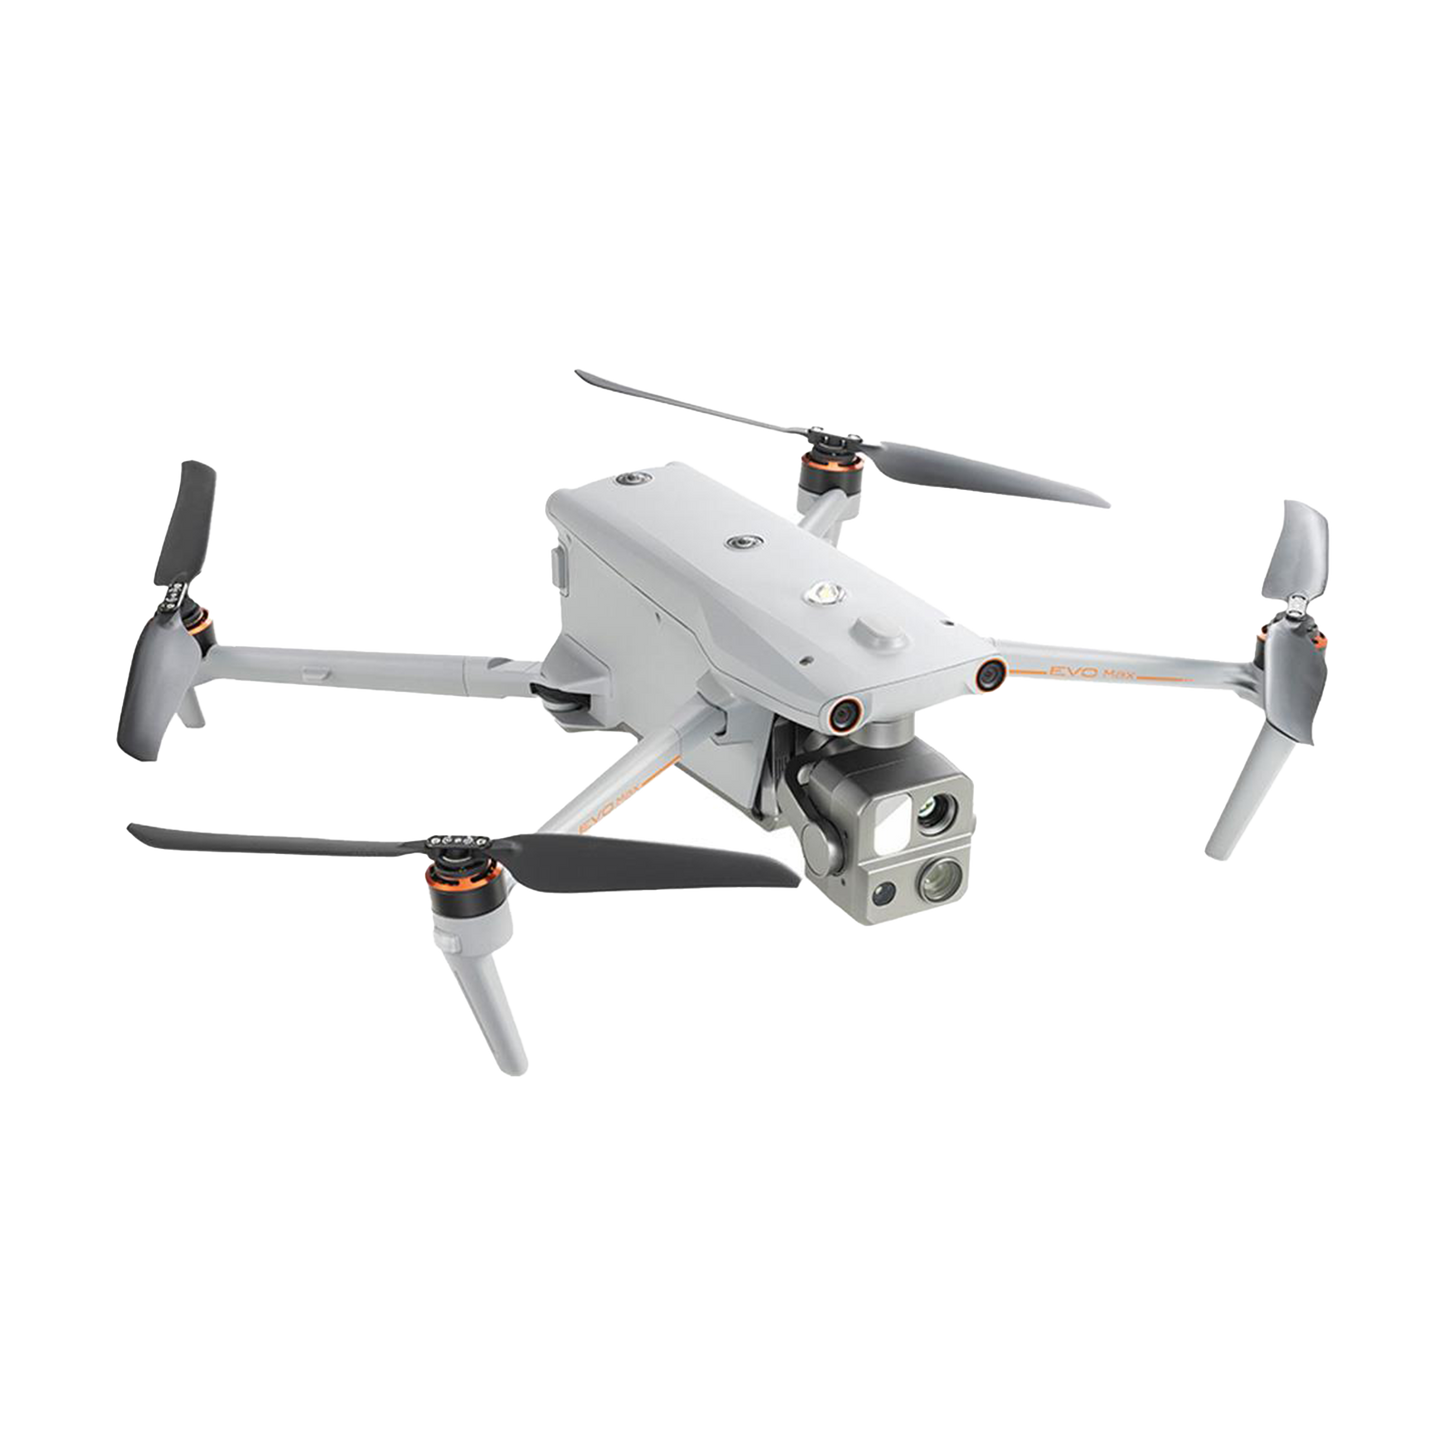 Autel Robotics EVO Max 4T 8K Drone with Smart Controller V3